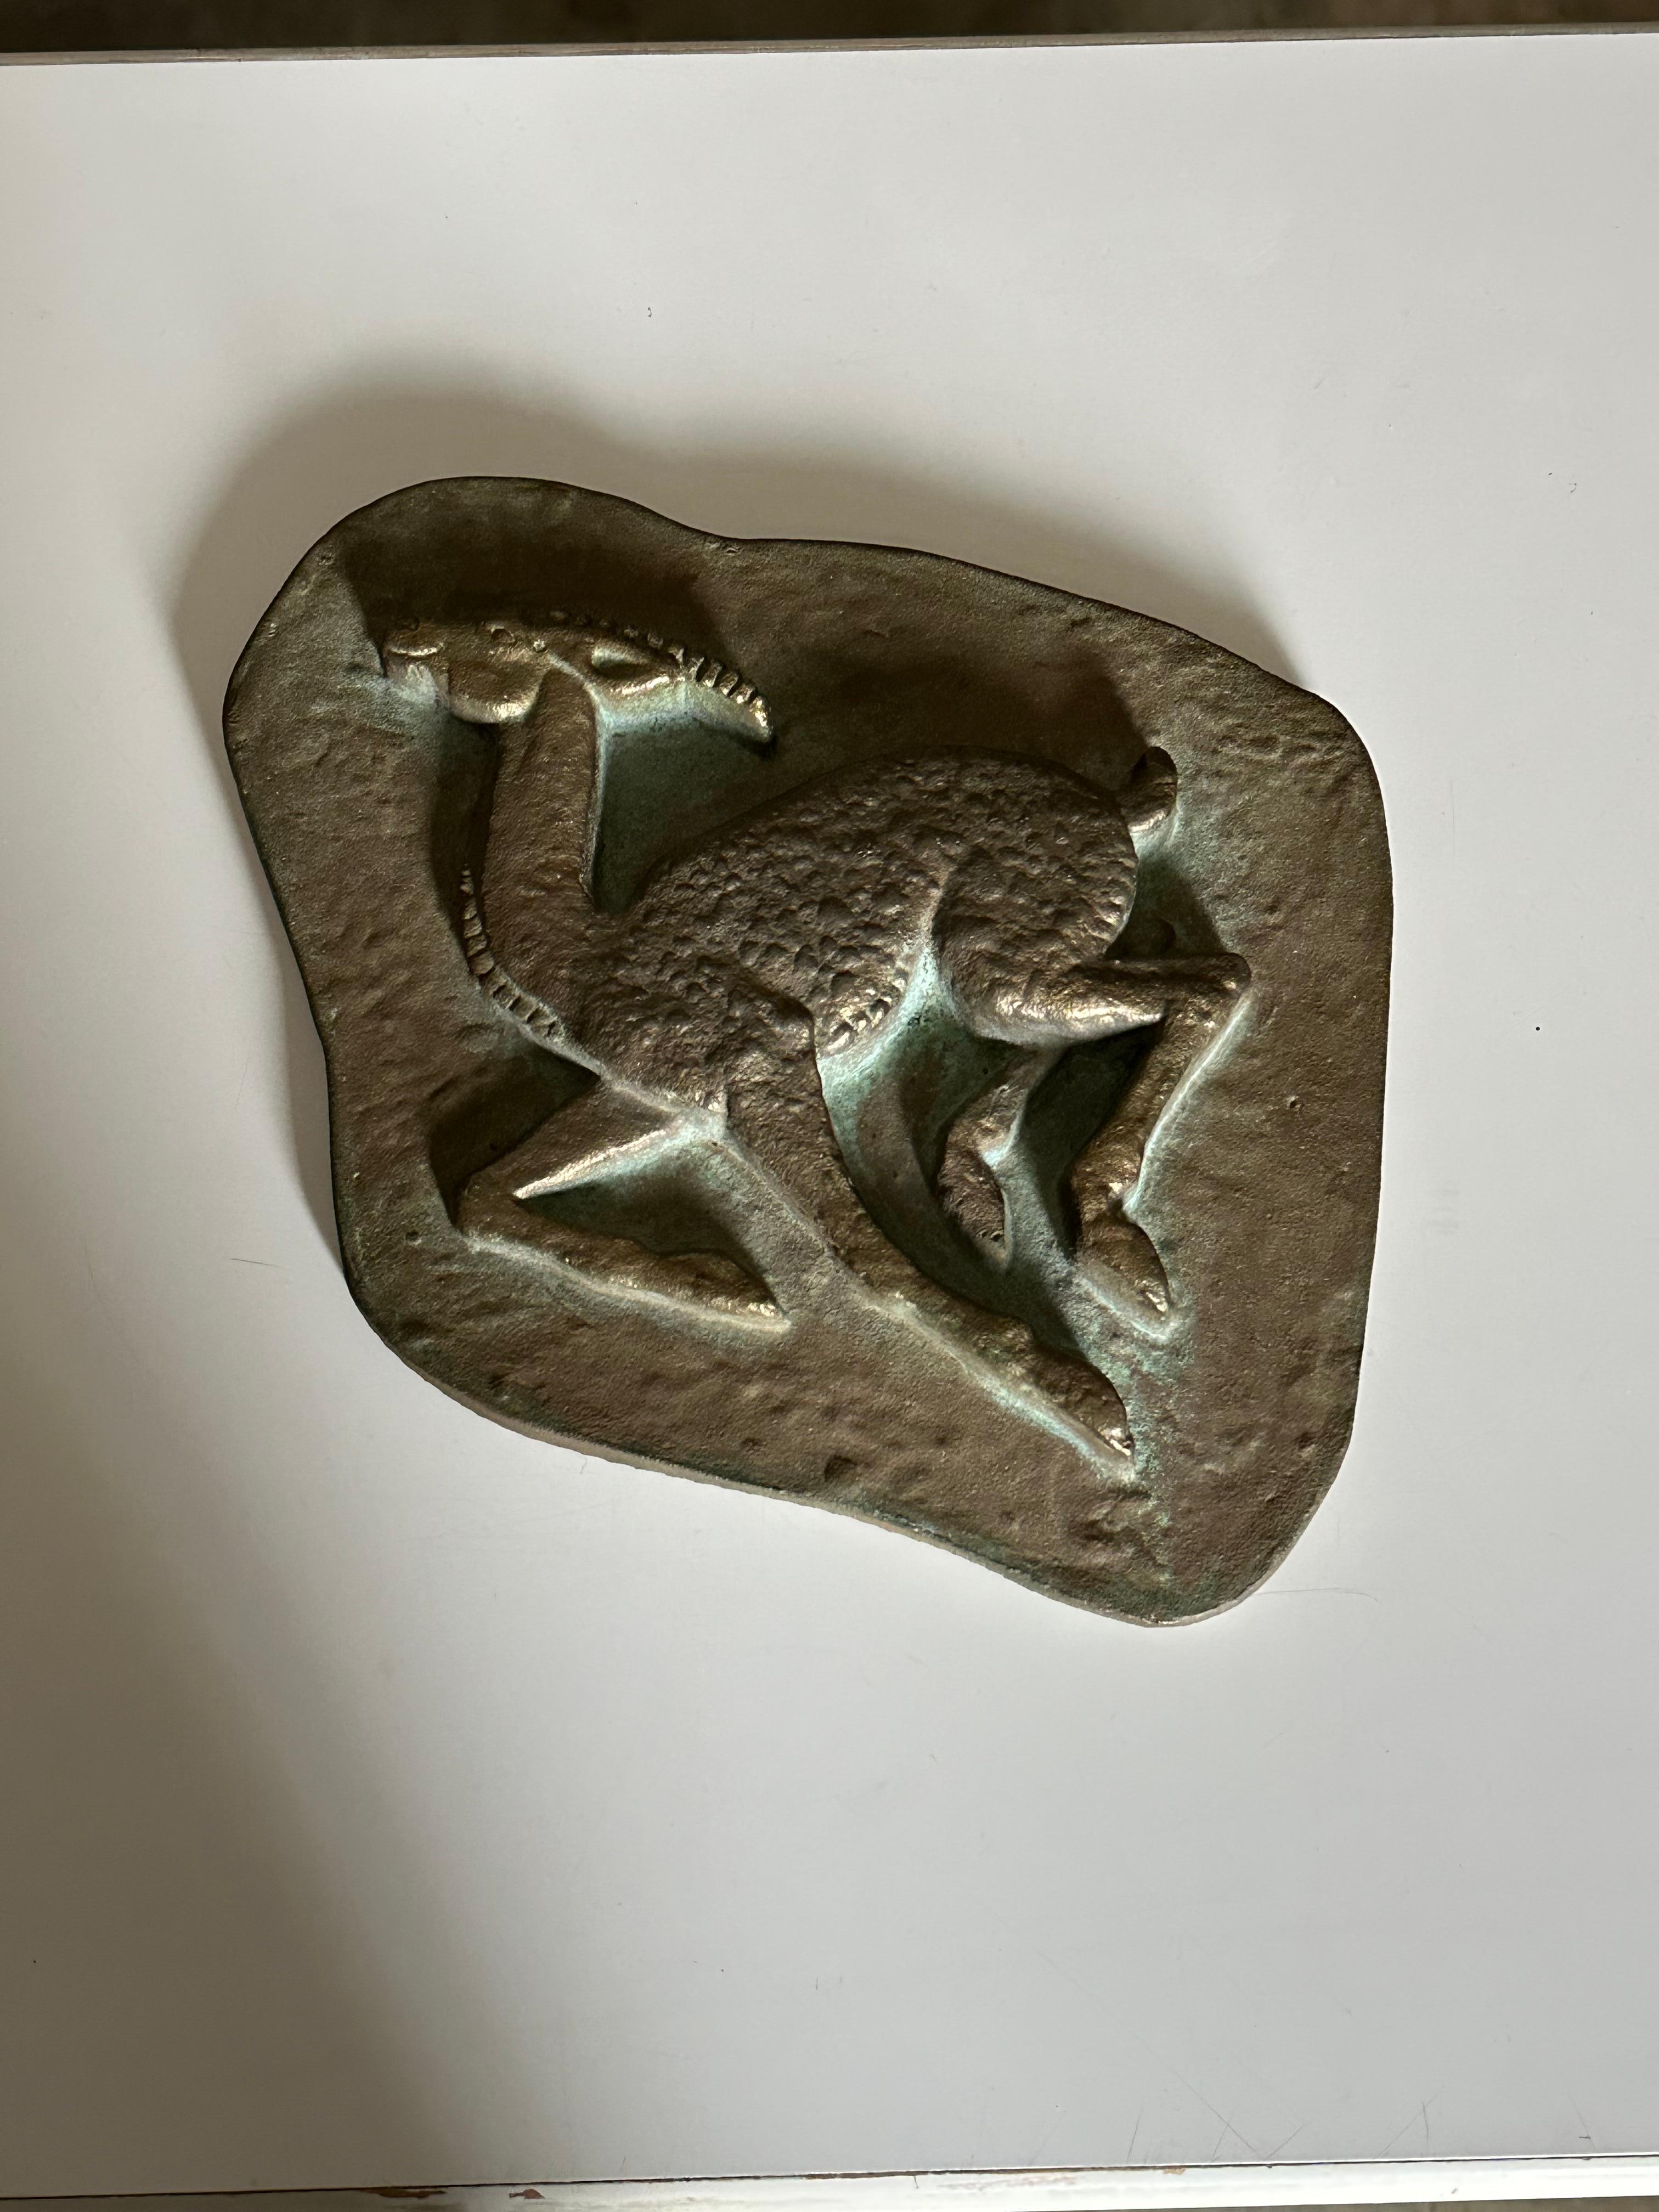 Un relief mural sculptural bien proportionné, en bronze massif, provenant de Suède, vers les années 1950. La pièce représente une antilope avec une magnifique patine verte se formant autour de l'animal. L'article pèse probablement 5-6lbs et la